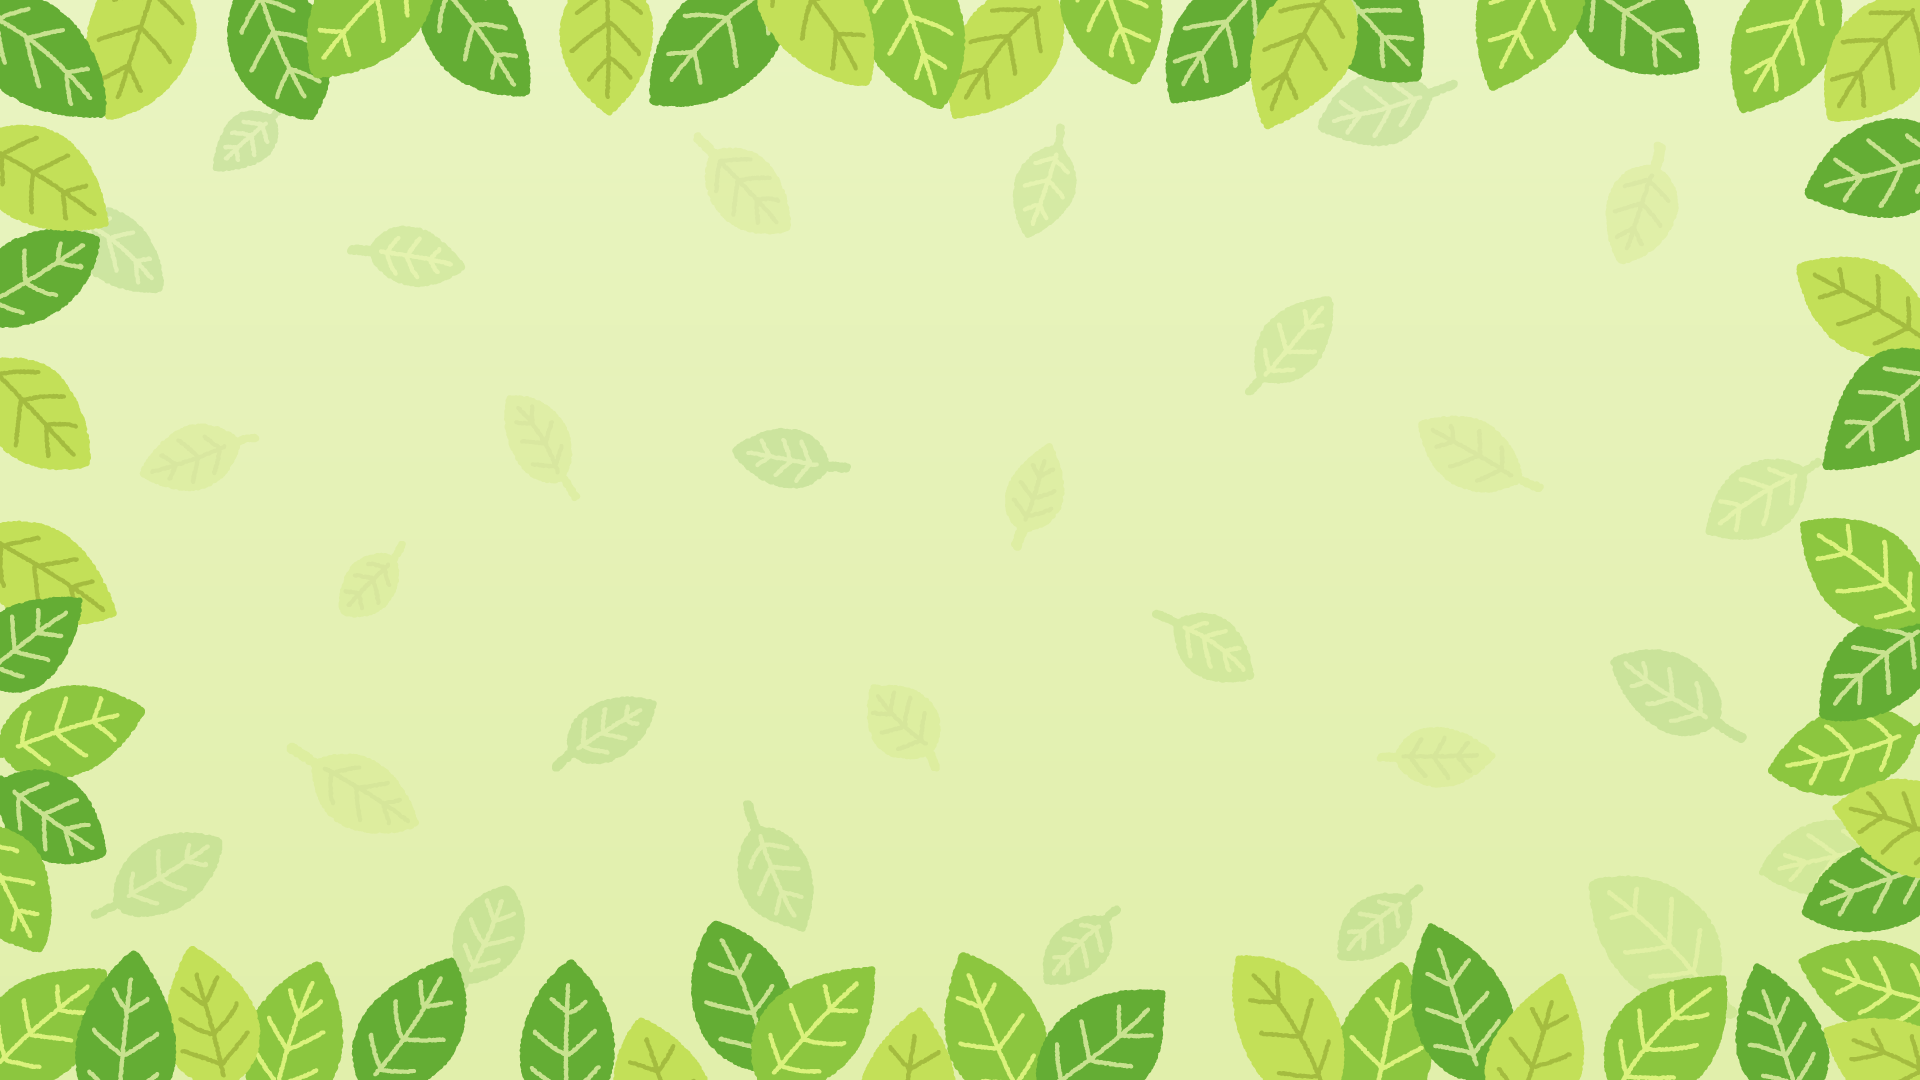 葉っぱの背景素材のフリーイラスト Clip art of leaves background